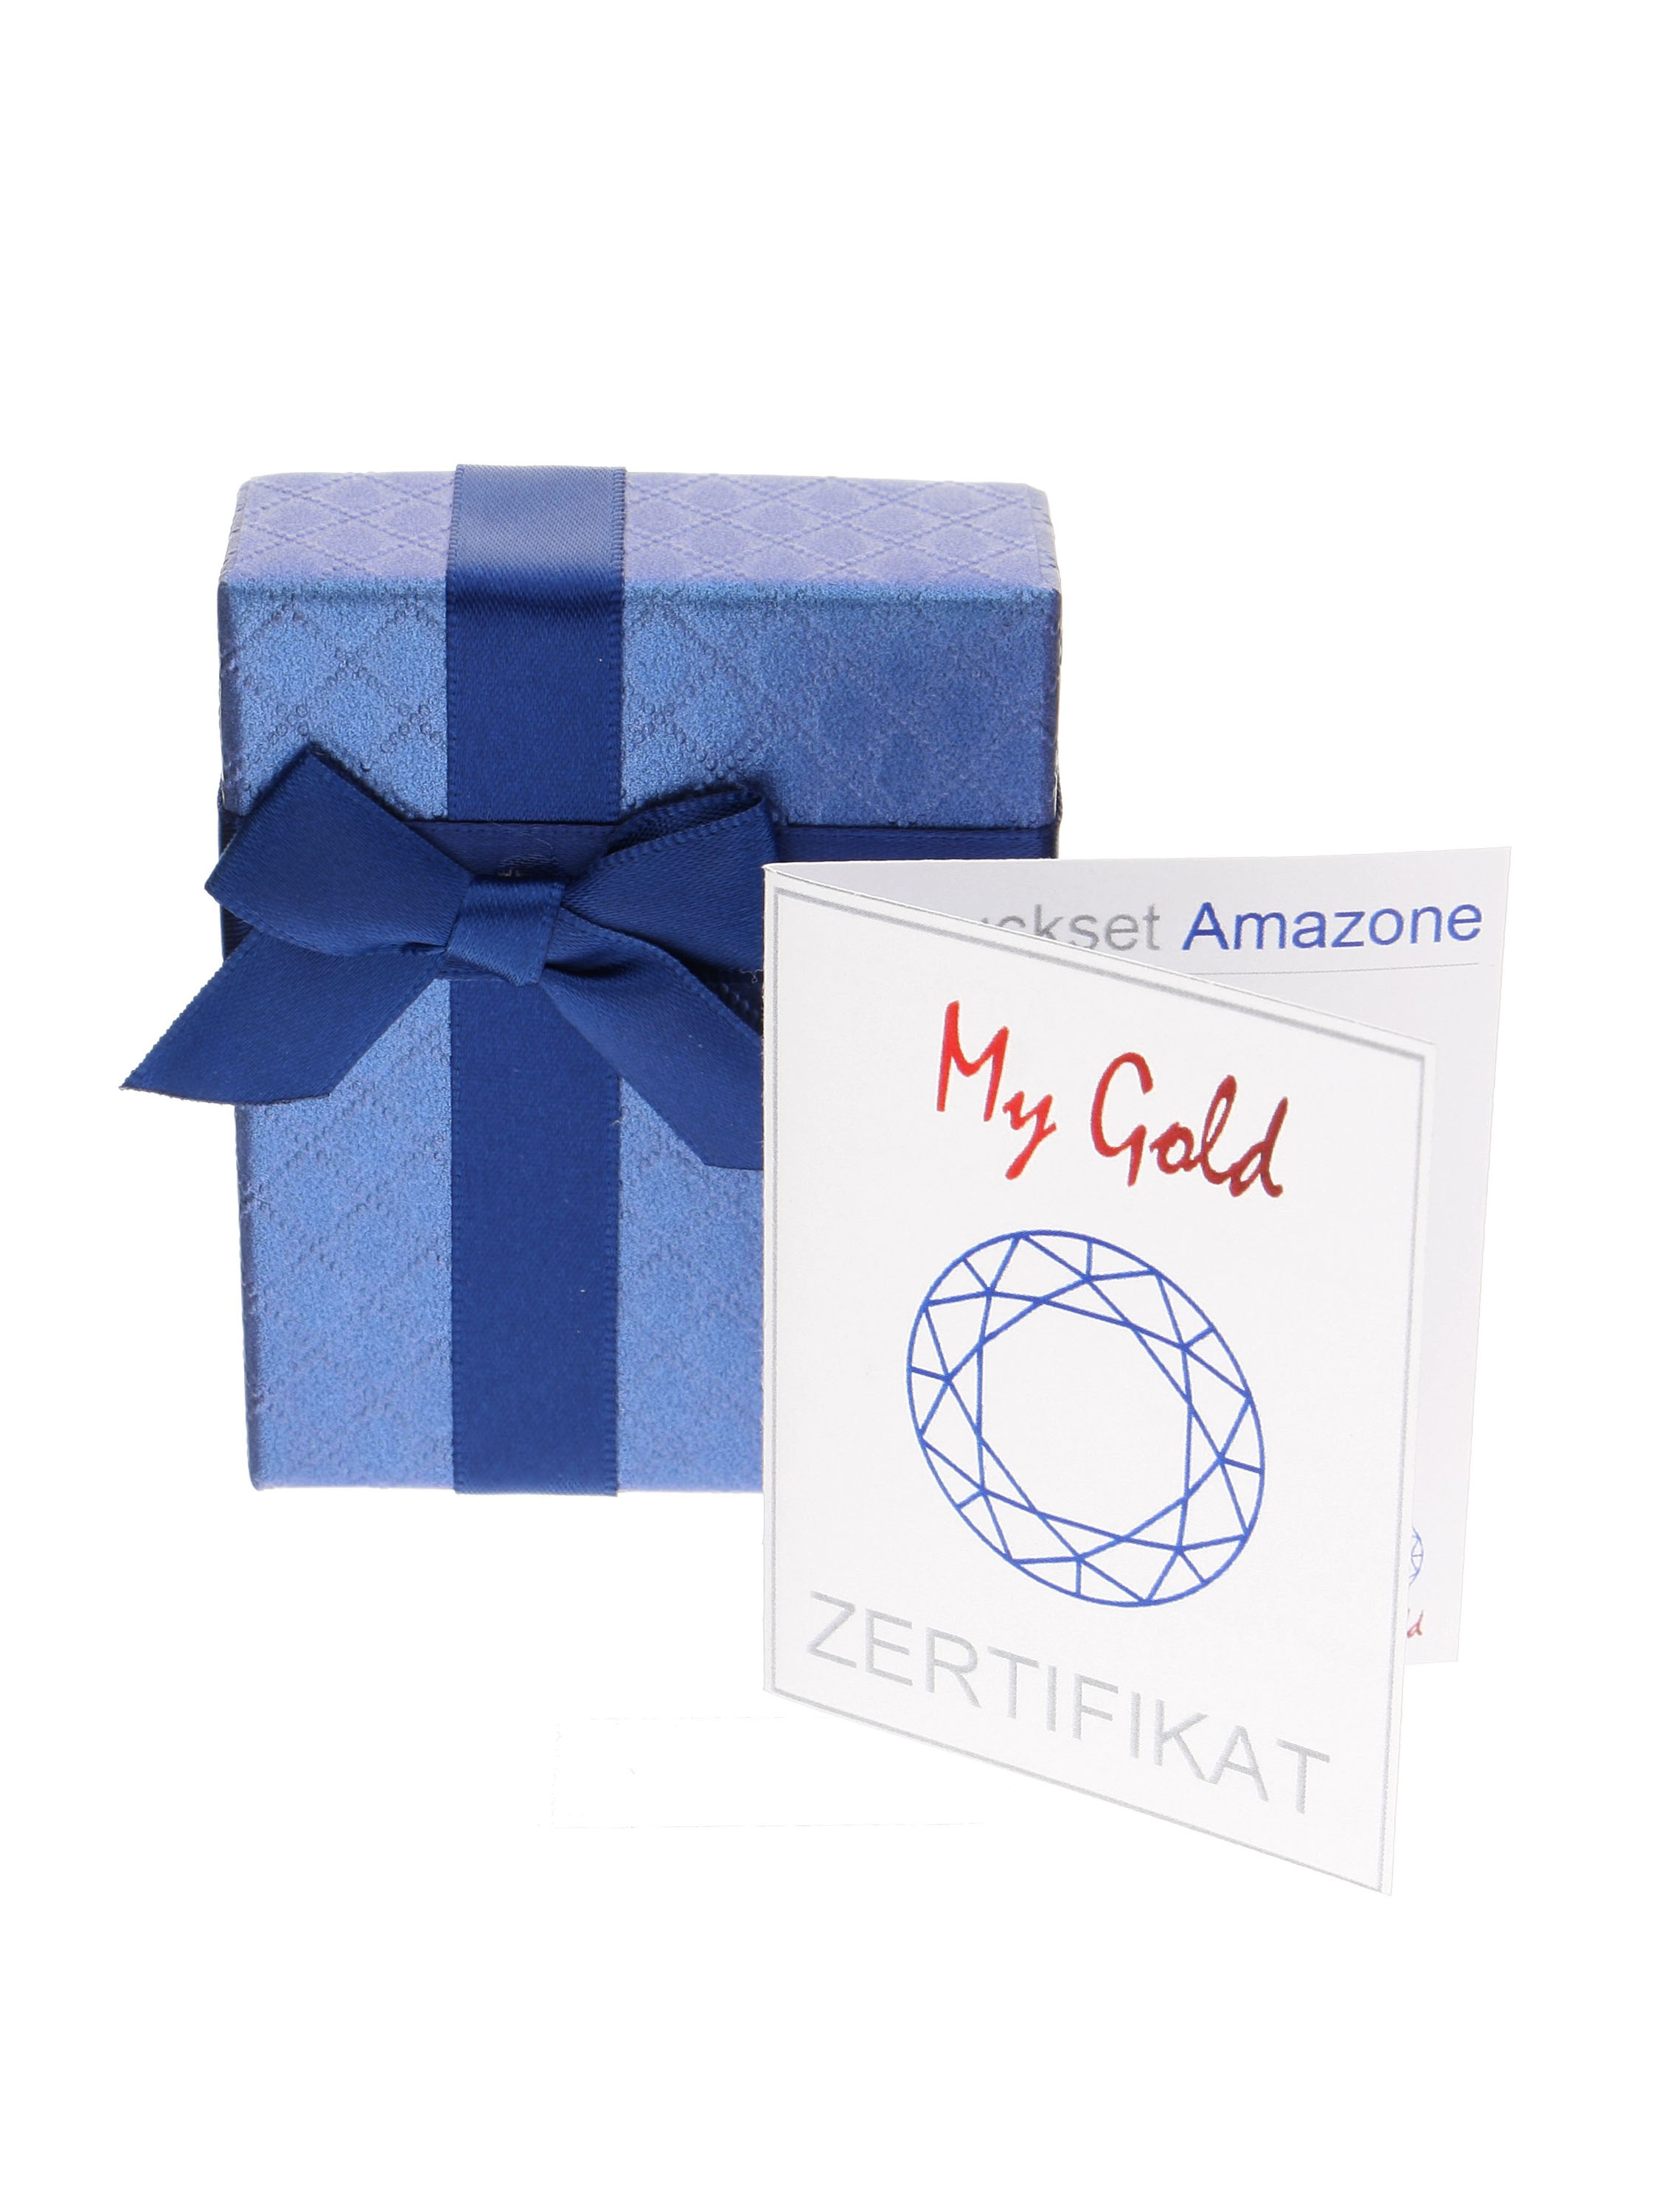 Blaue Geschenkschachtel mit schöner Satinschleife und Echtheitszertifikat für das dunkelblaue Amazone Set | Verpackung